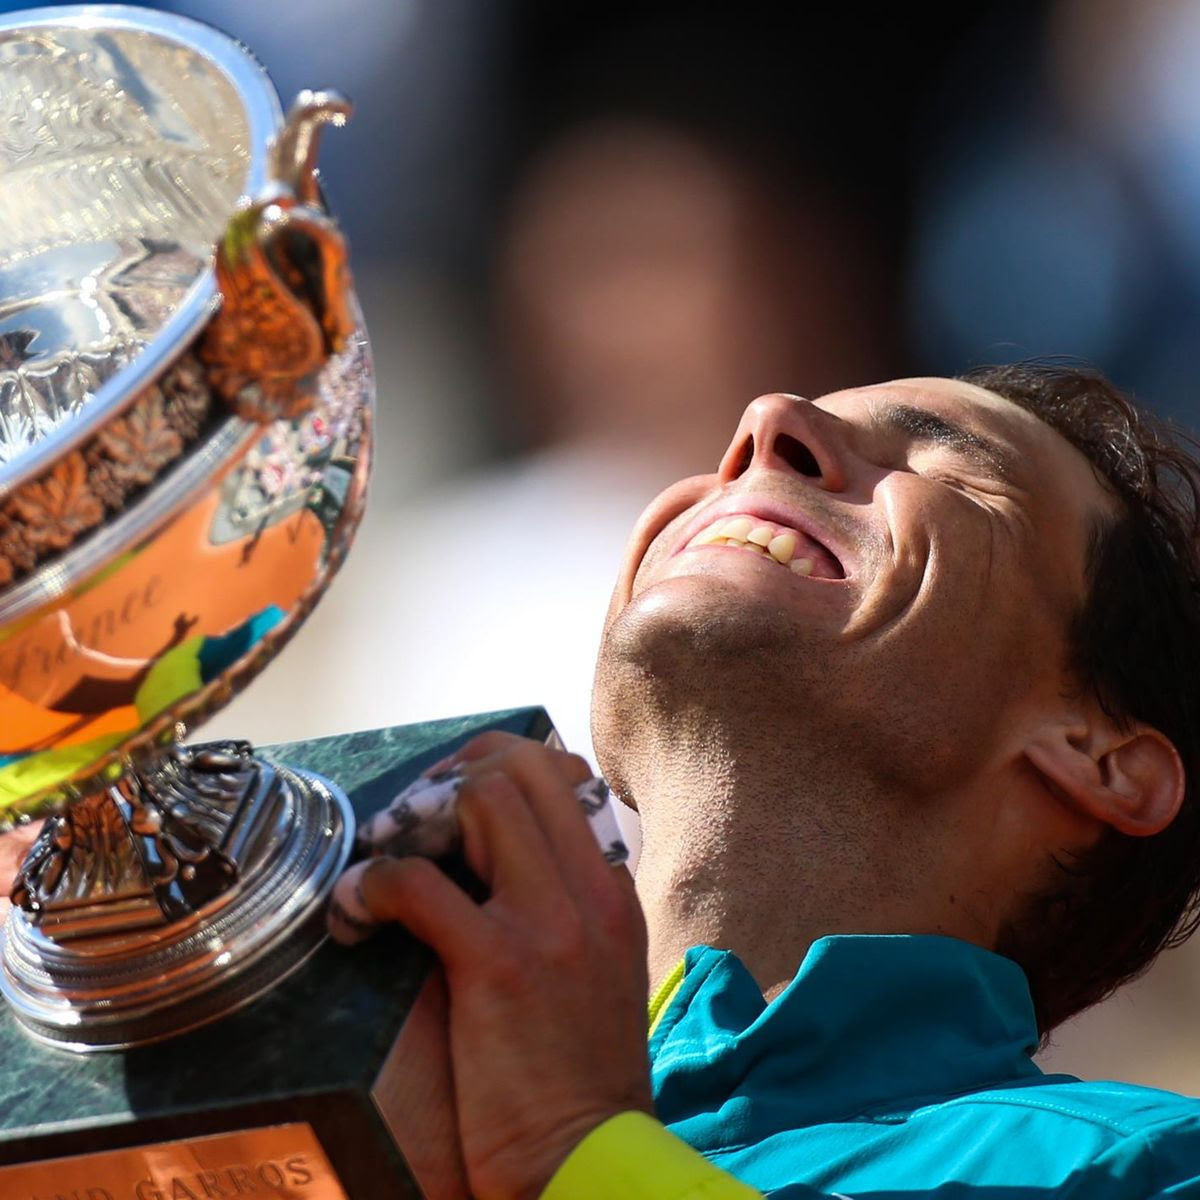 Rafael Nadal - Álex Corretja exklusiv über Grand-Slam-Siege 2022 des Spaniers: "Es ist ein Wunder - das schafft nur er"